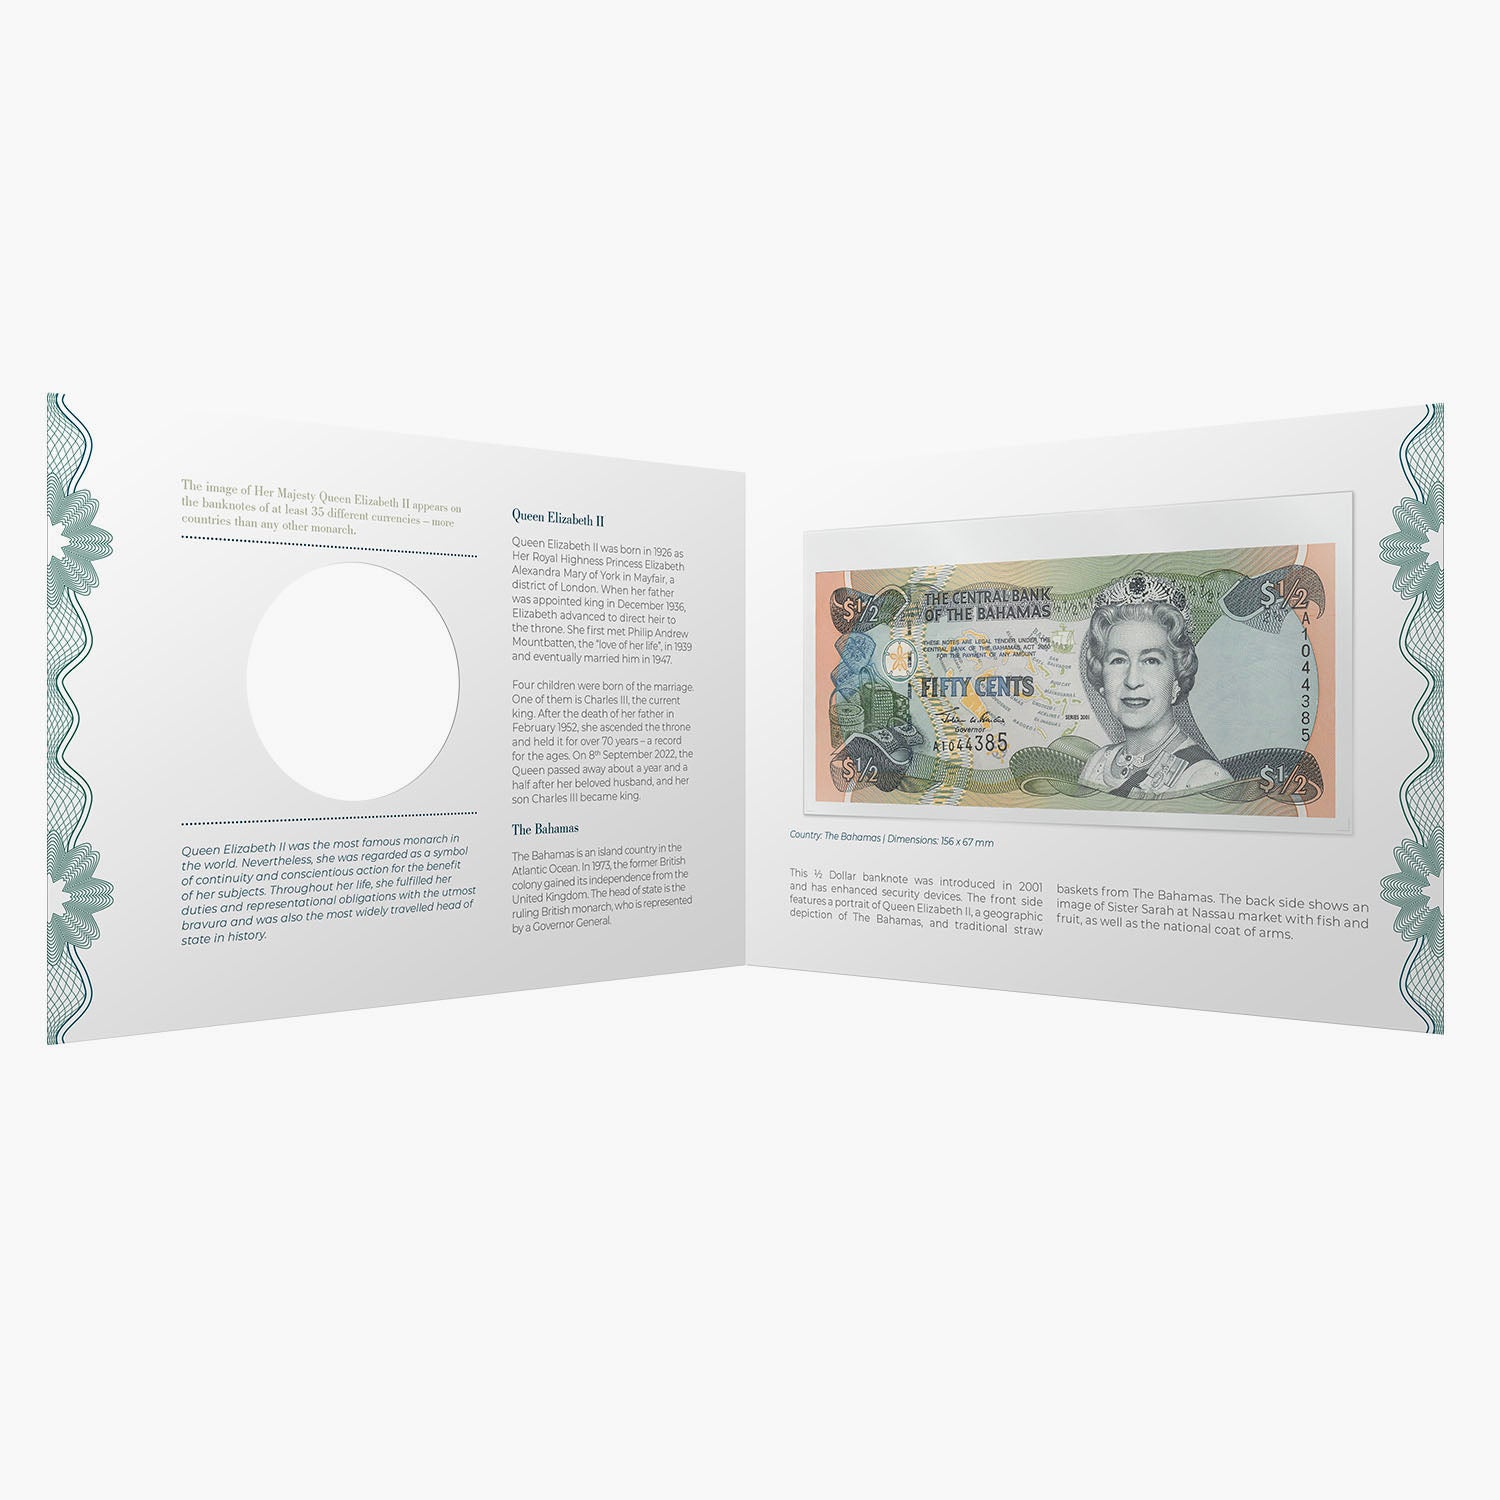 Billet de banque royal d'un demi-dollar de Sa Majesté la reine Elizabeth II